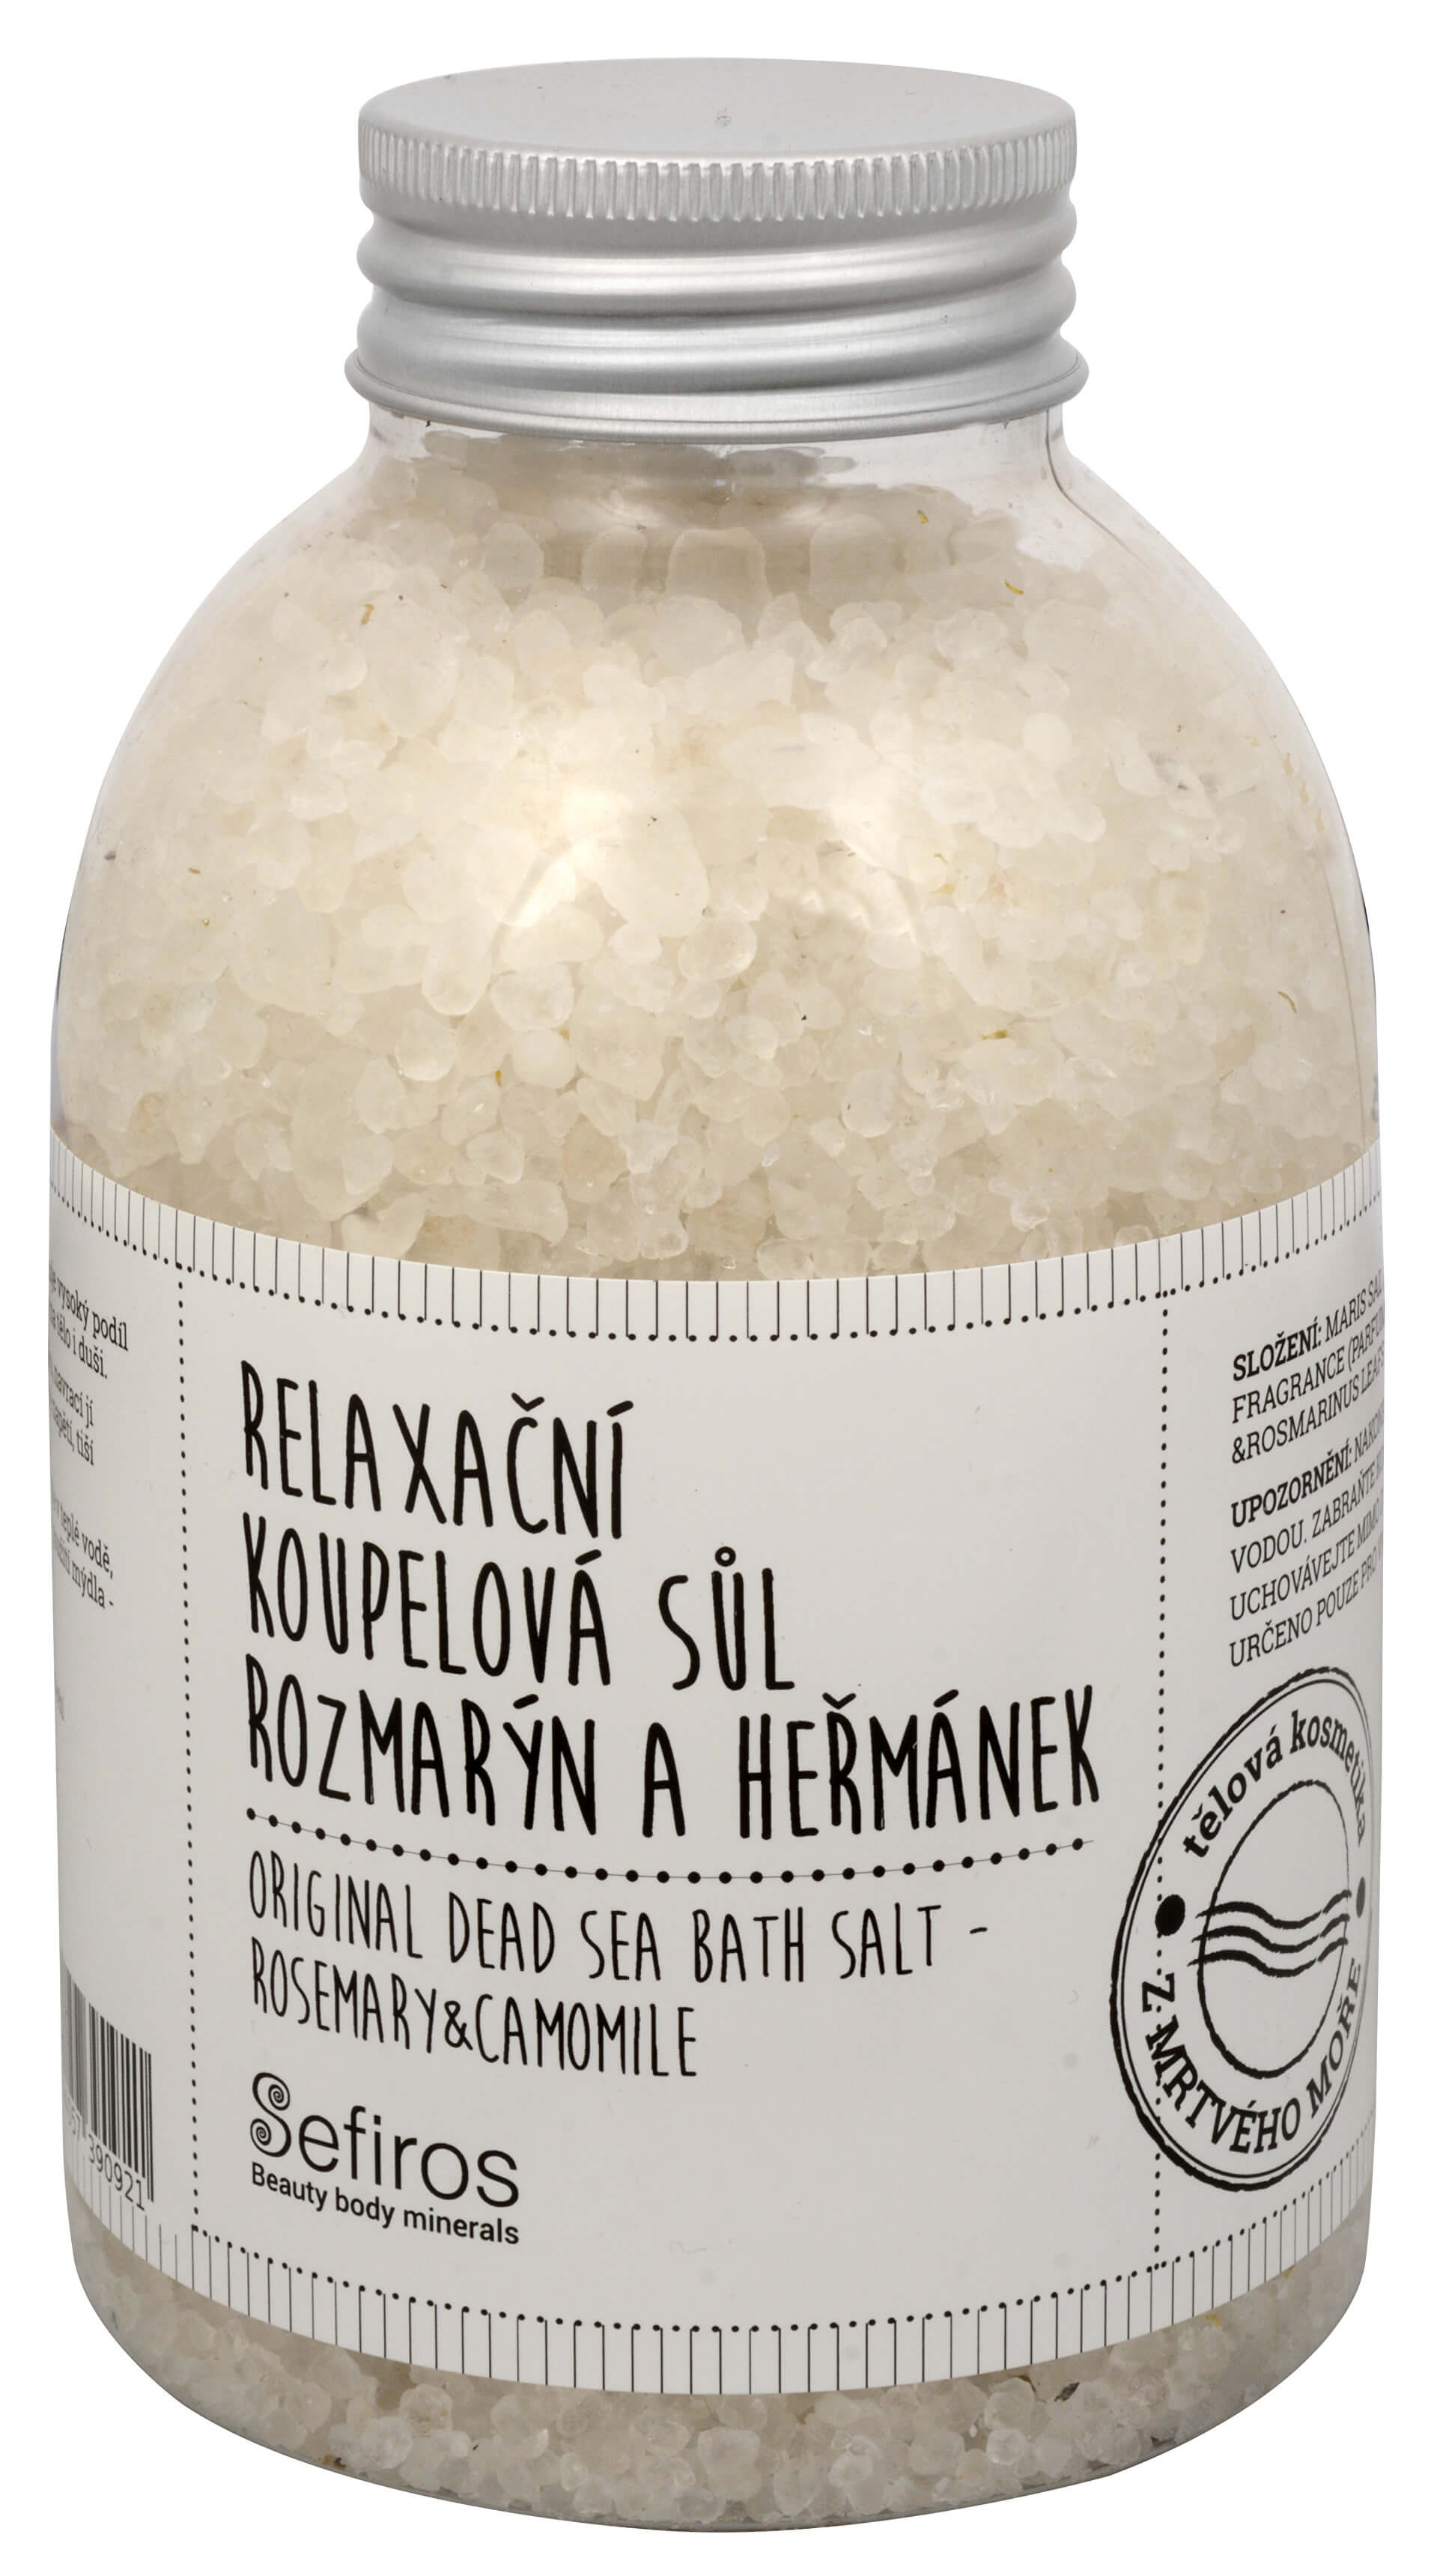 Sefiross Relaxační koupelová sůl Rozmarýn a heřmánek (Original Dead Sea Bath Salt) 500 g